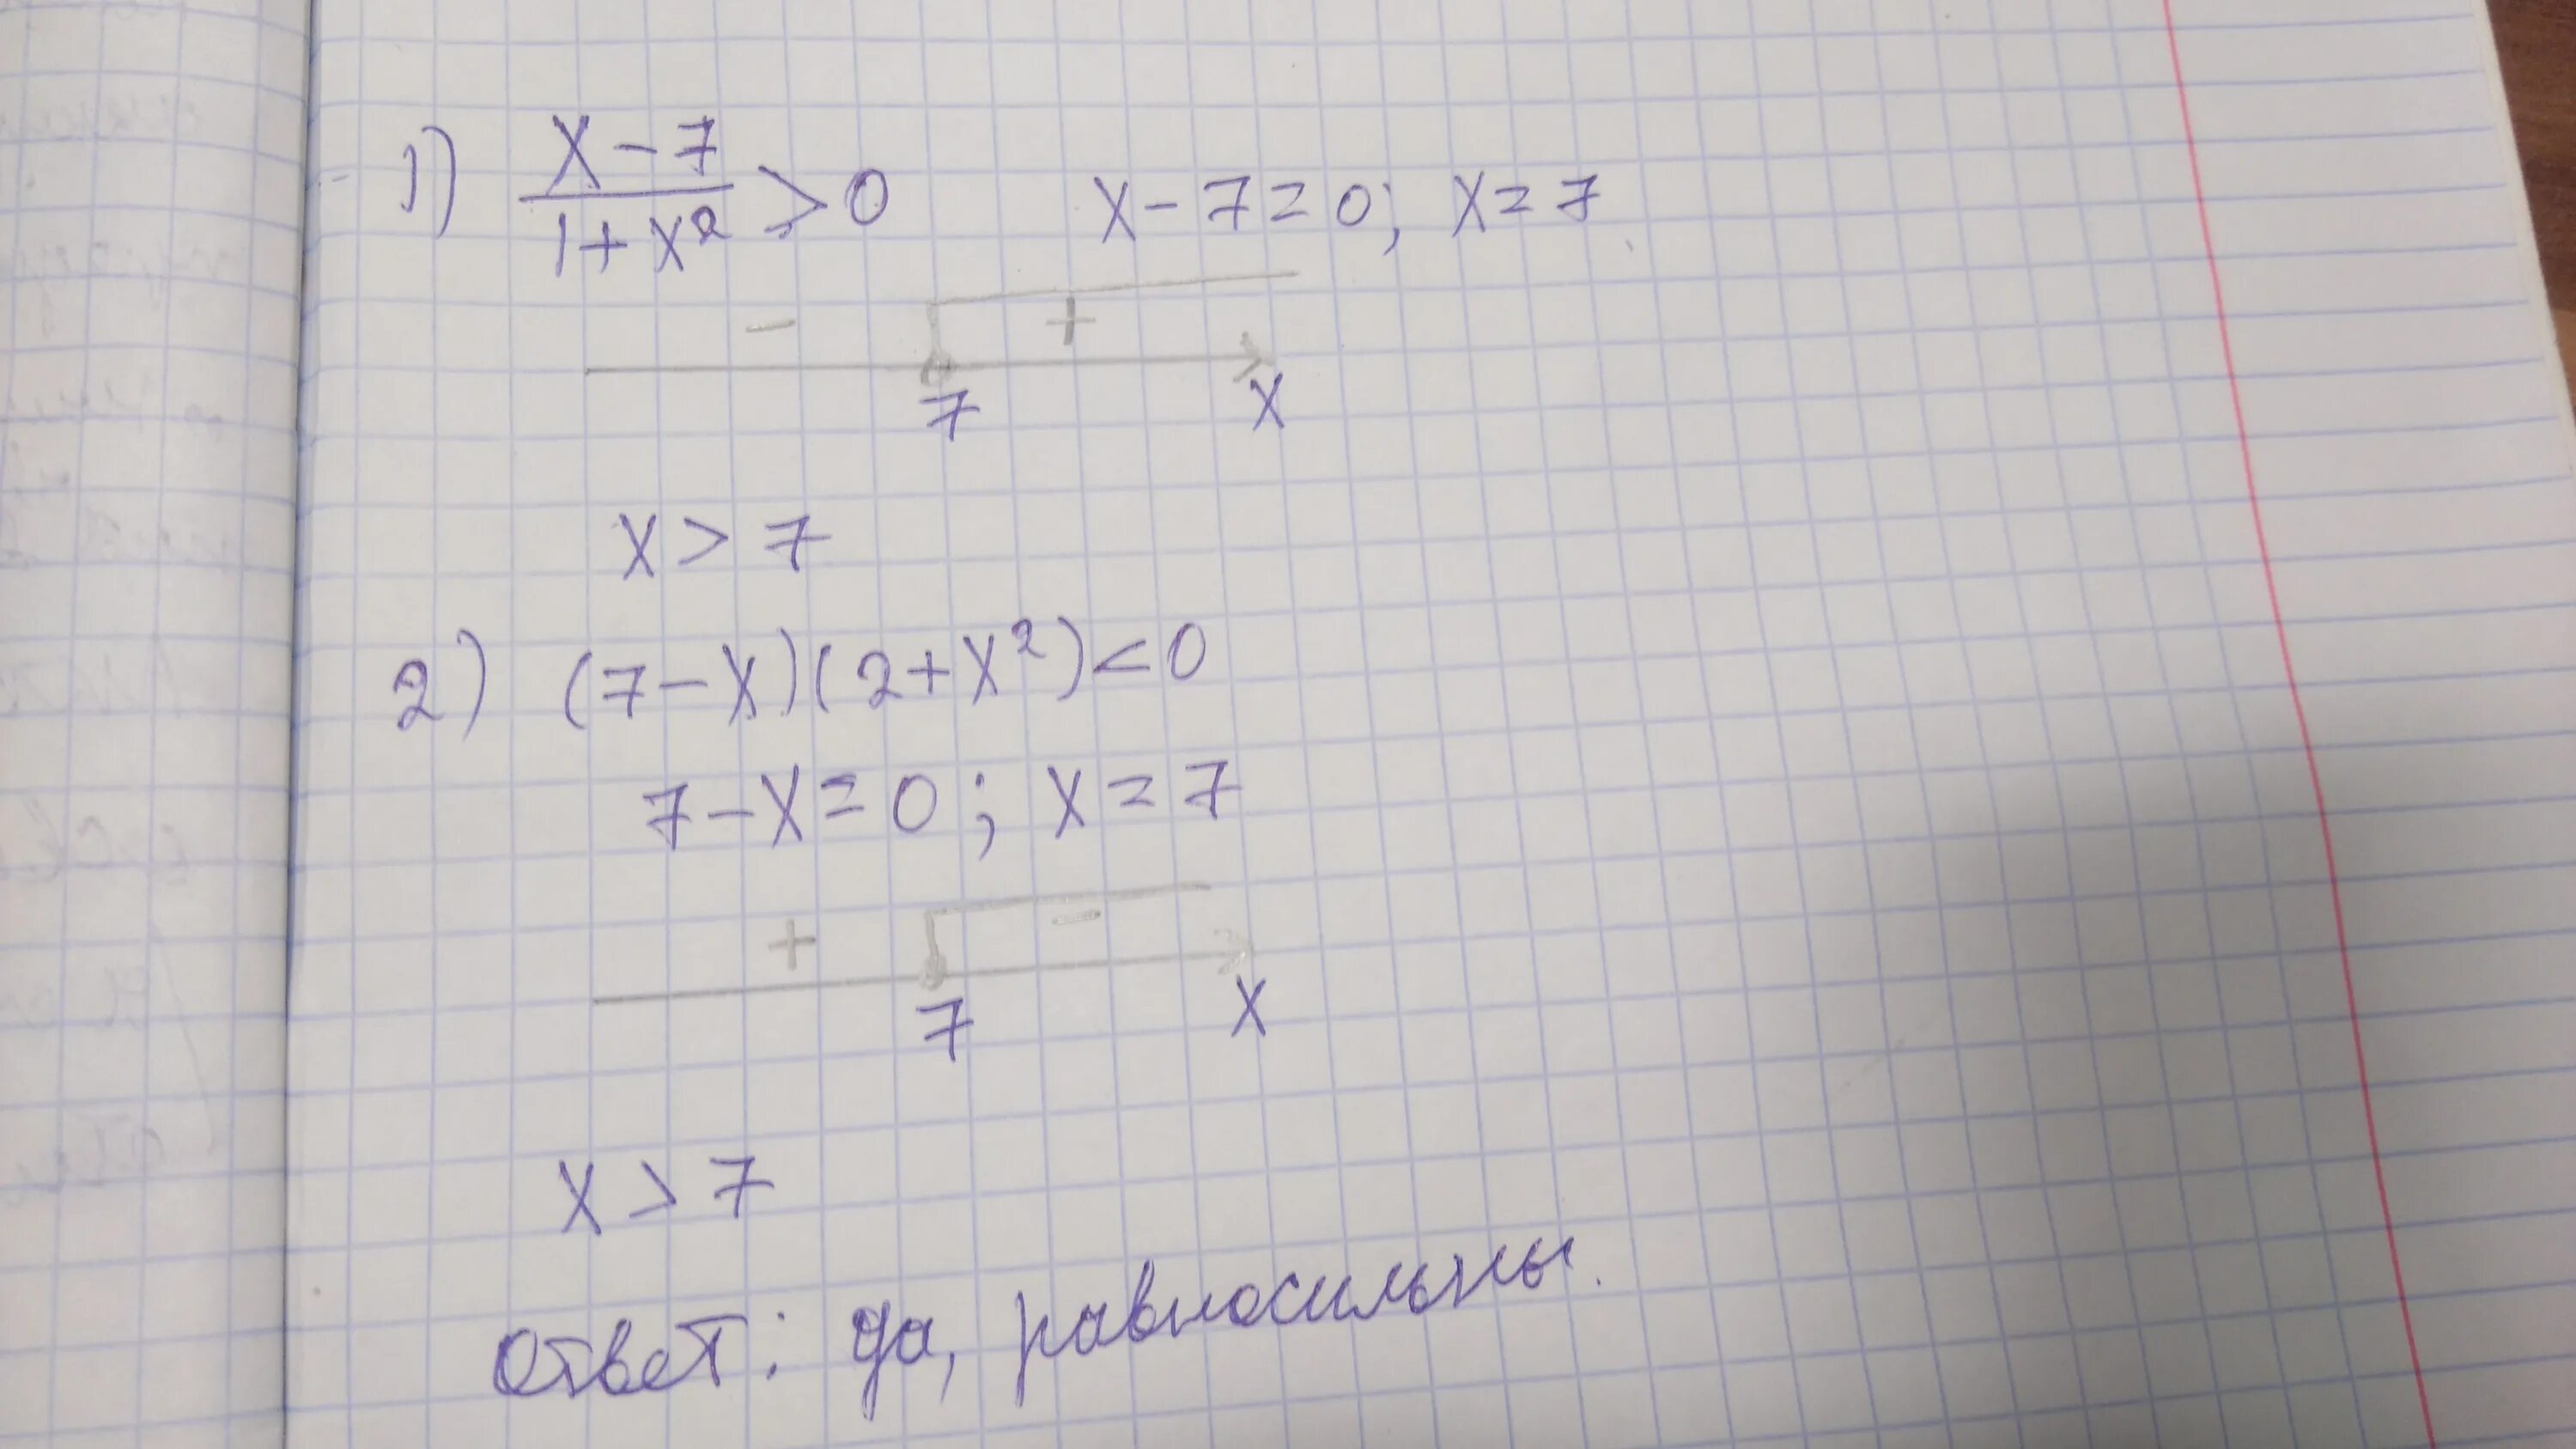 2x 7 ответ. Равносильны ли неравенства (x + 2). Равносильны ли неравенства x-7/1+x^2. Равносильны ли неравенства 2x2+1/x-2>1 и 2x2+1>x-2. Равносильны ли уравнения x 2 0 x 2 0.